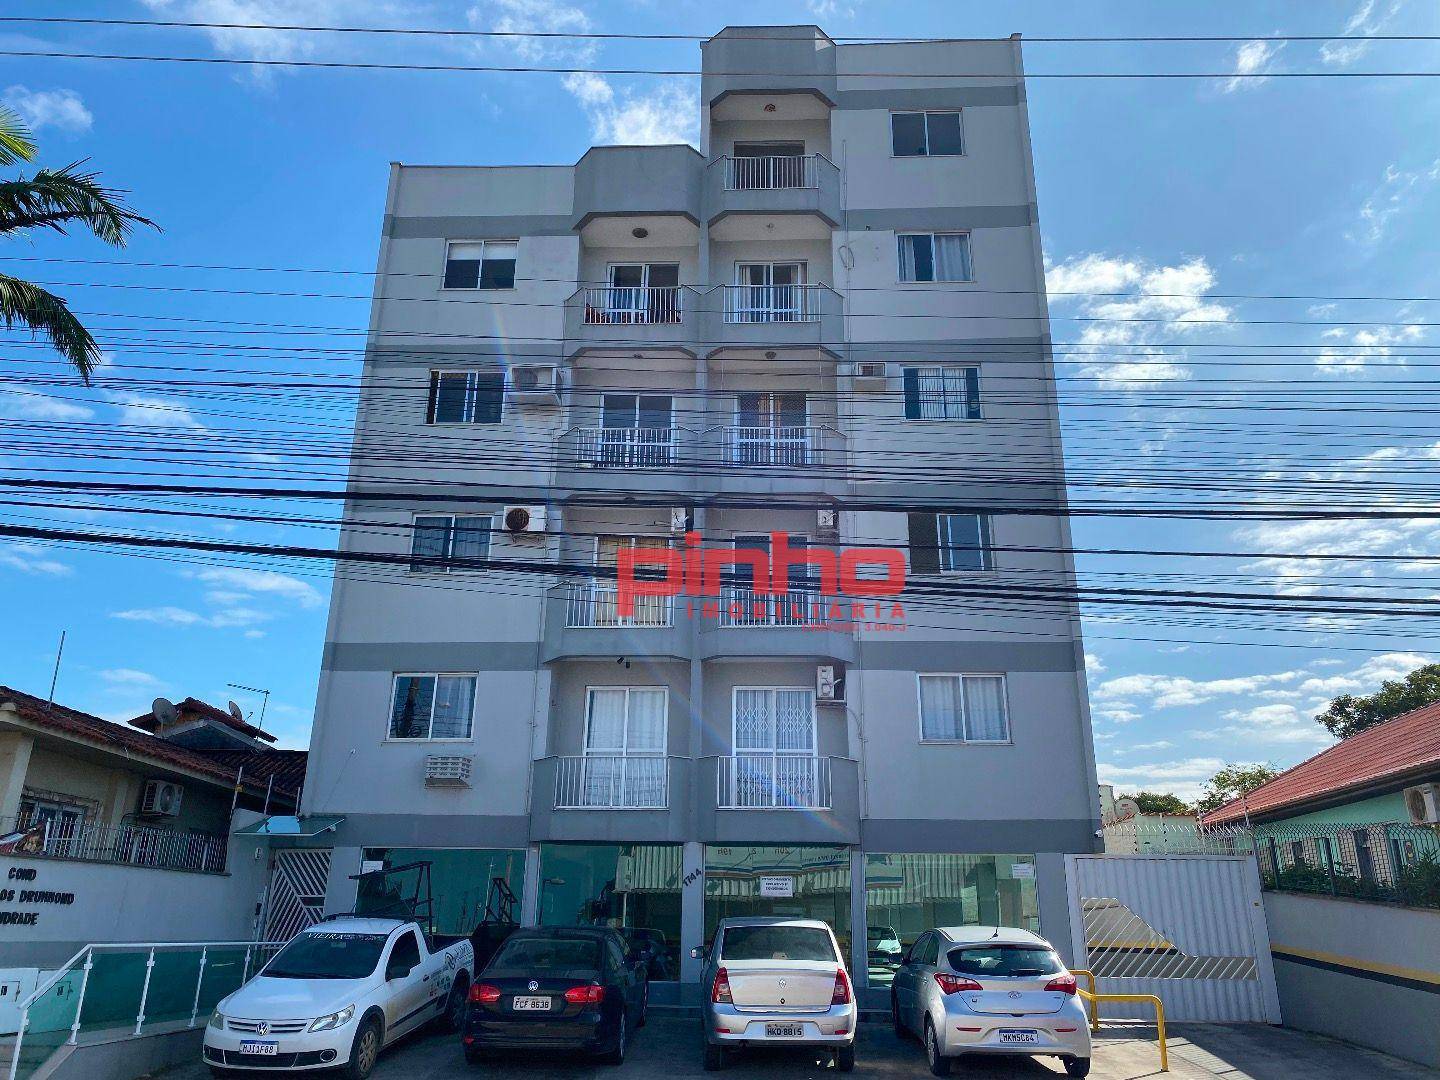 Cobertura com 3 dormitórios para alugar, 115 m² por R$ 2.500,00/mês - Praia Comprida - São José/SC